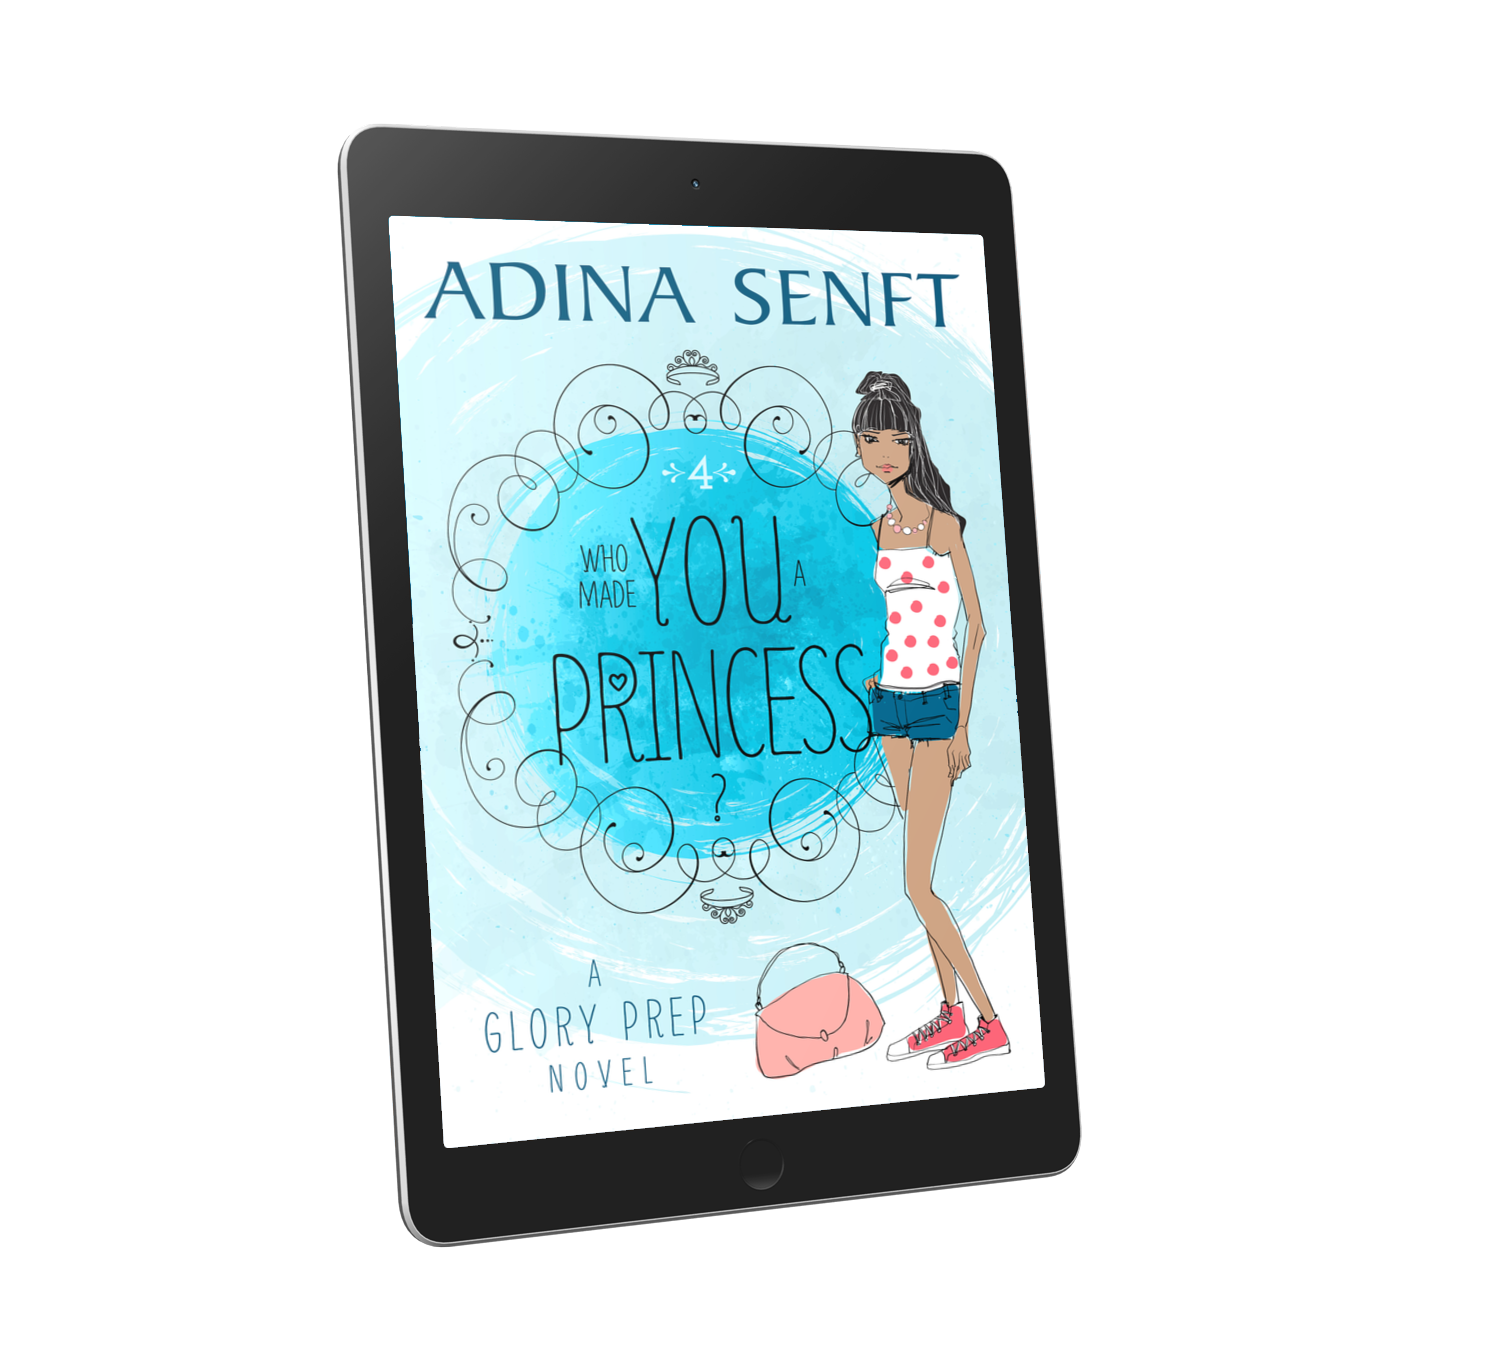 Who Made You a Princess? by Adina Senft, a YA novel of friendship, fashion and faith